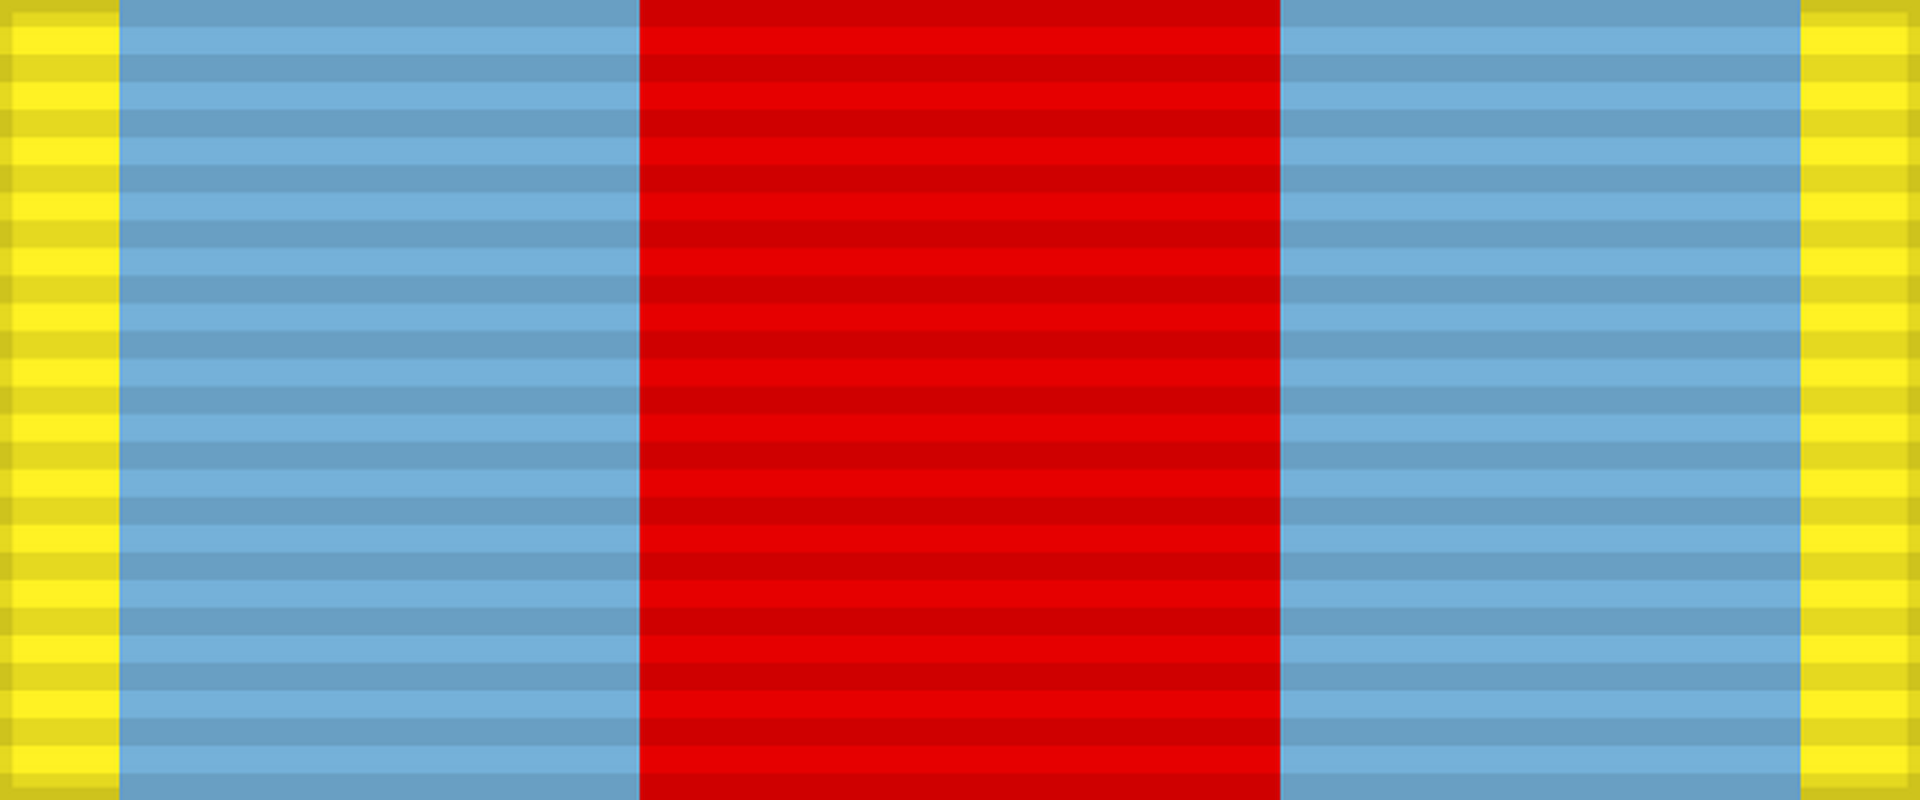 Лента медали «За освобождение Варшавы». СССР.